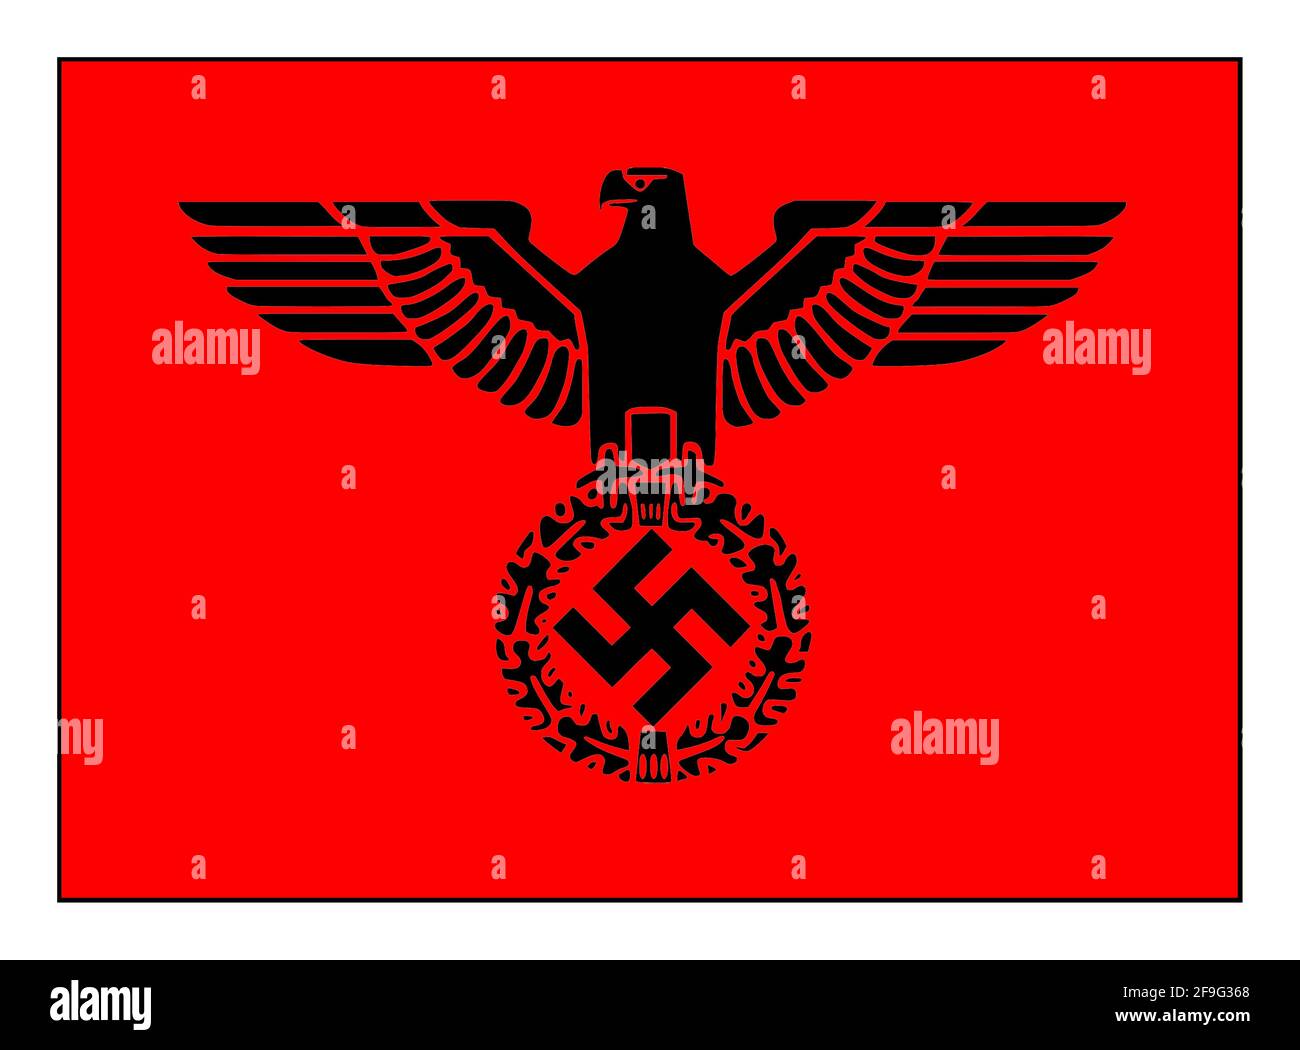 EMBLÈME DE LA SWASTIKA le Parteiadler ou Emblem de la Nationalsozialistische Deutsche Arbeiterpartei connu sous le nom de NSDAP du Parti National socialiste (nazi) Allemagne nazie des années 1930 Banque D'Images